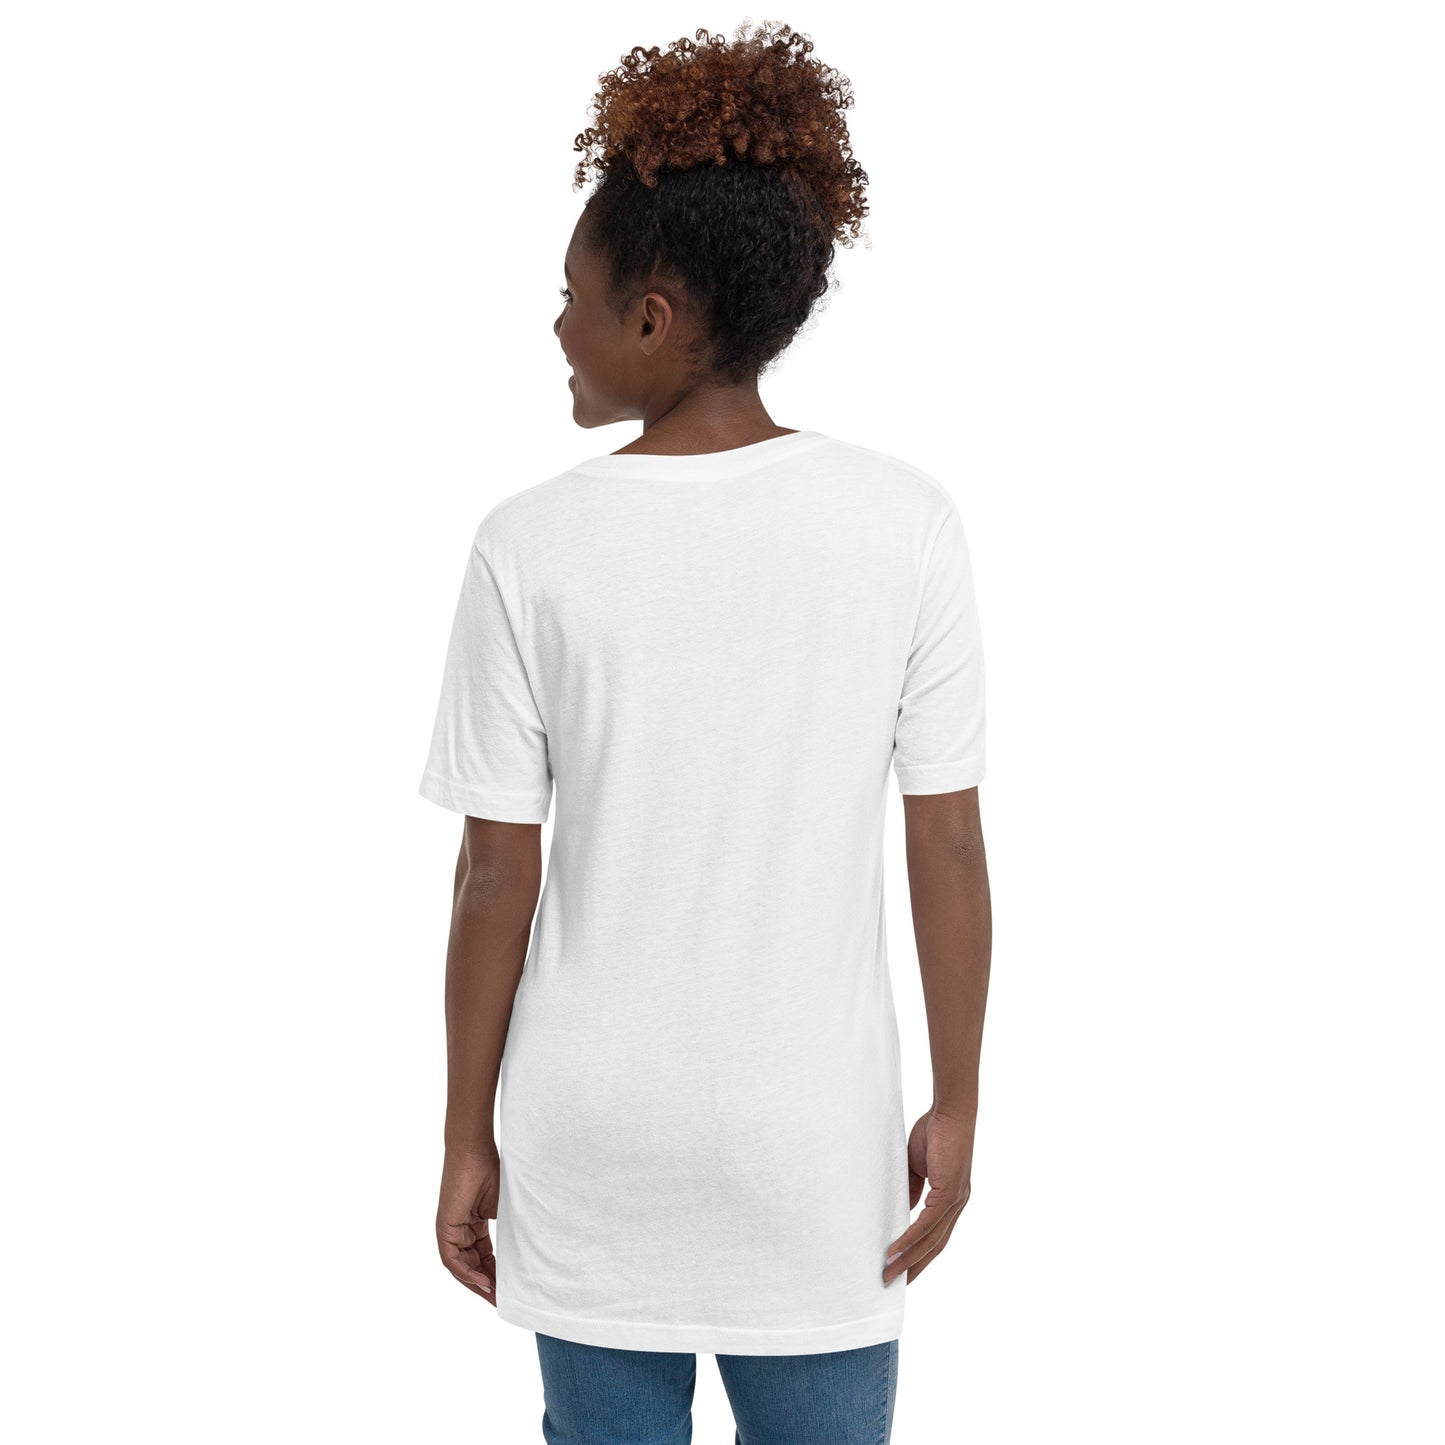 Women's Short Sleeve V-Neck T-Shirt - Cancer Afro Queen